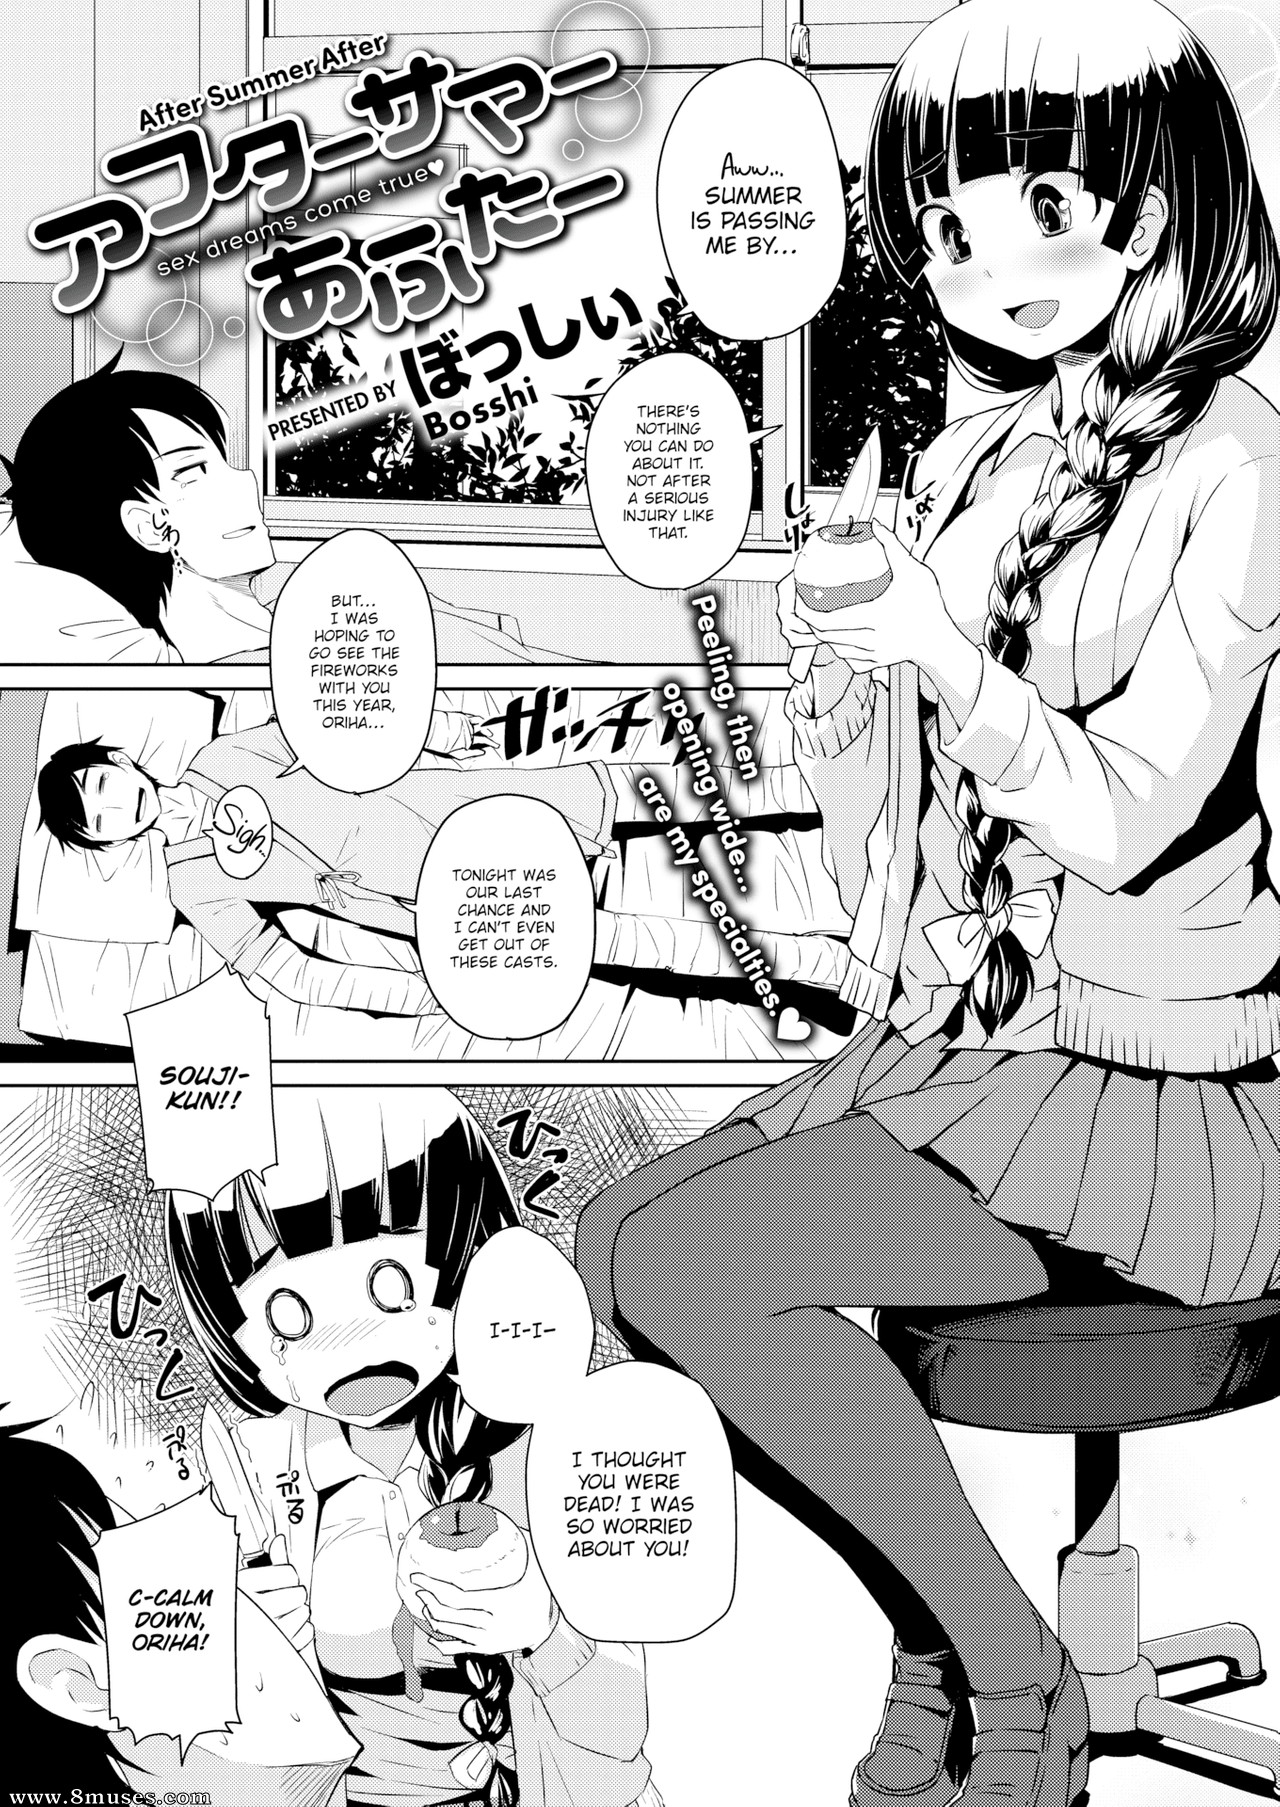 Cartoon porn comics manga